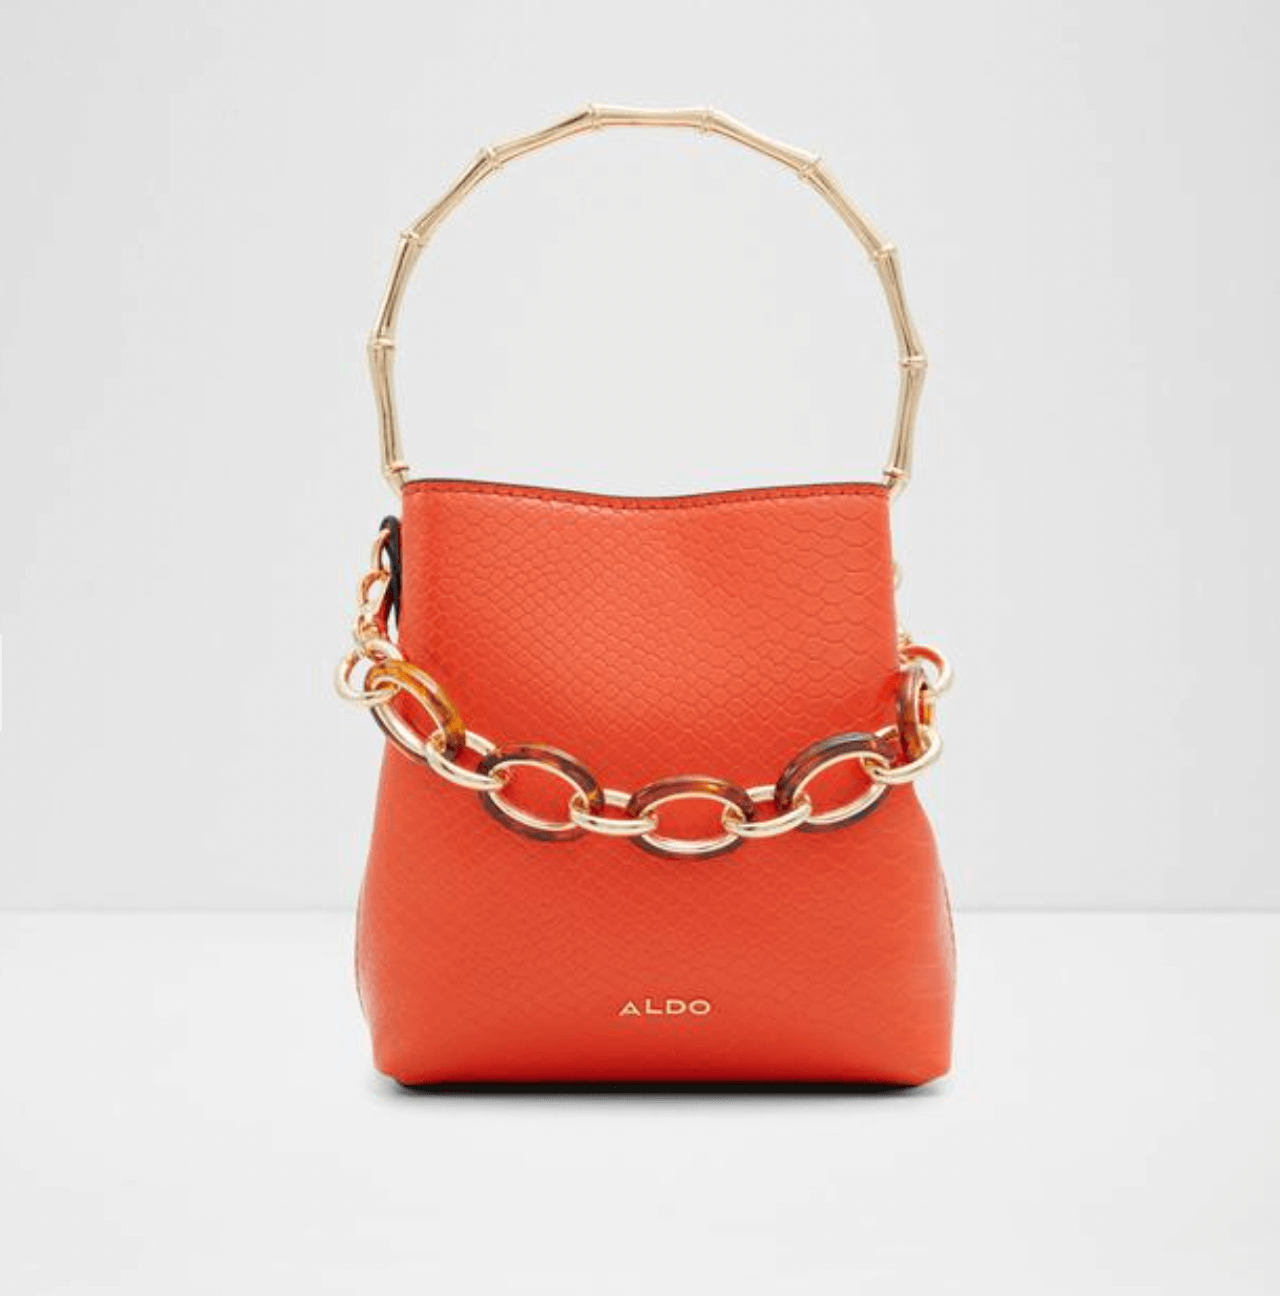 Latest Aldo Handbags